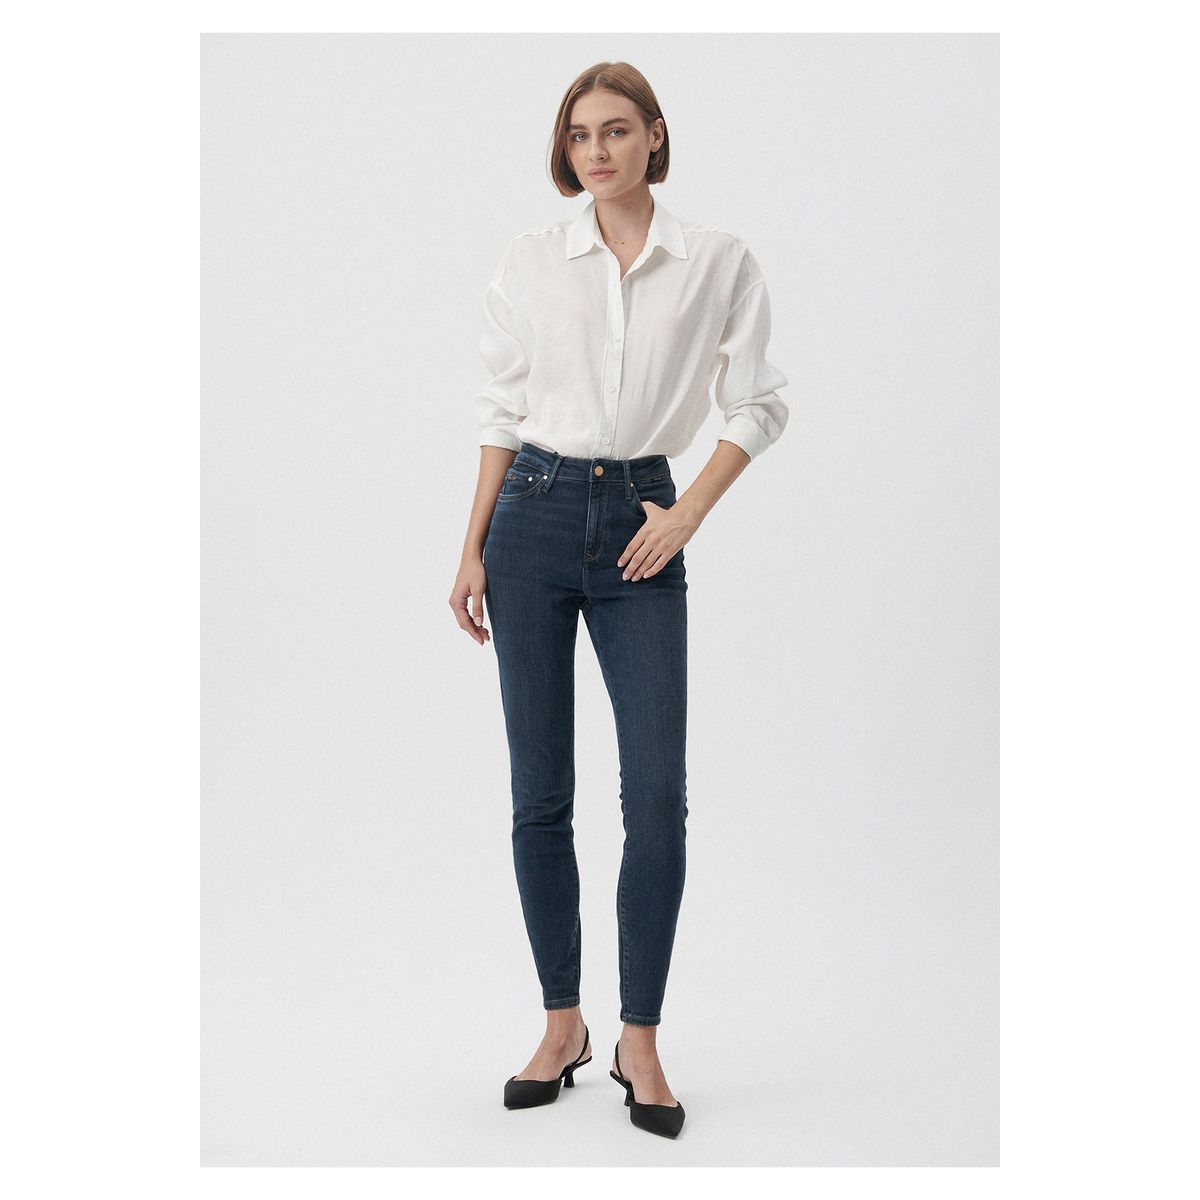 Mavi Bayan Jeans / Kot Pantolon Fiyatları - Sayfa 2